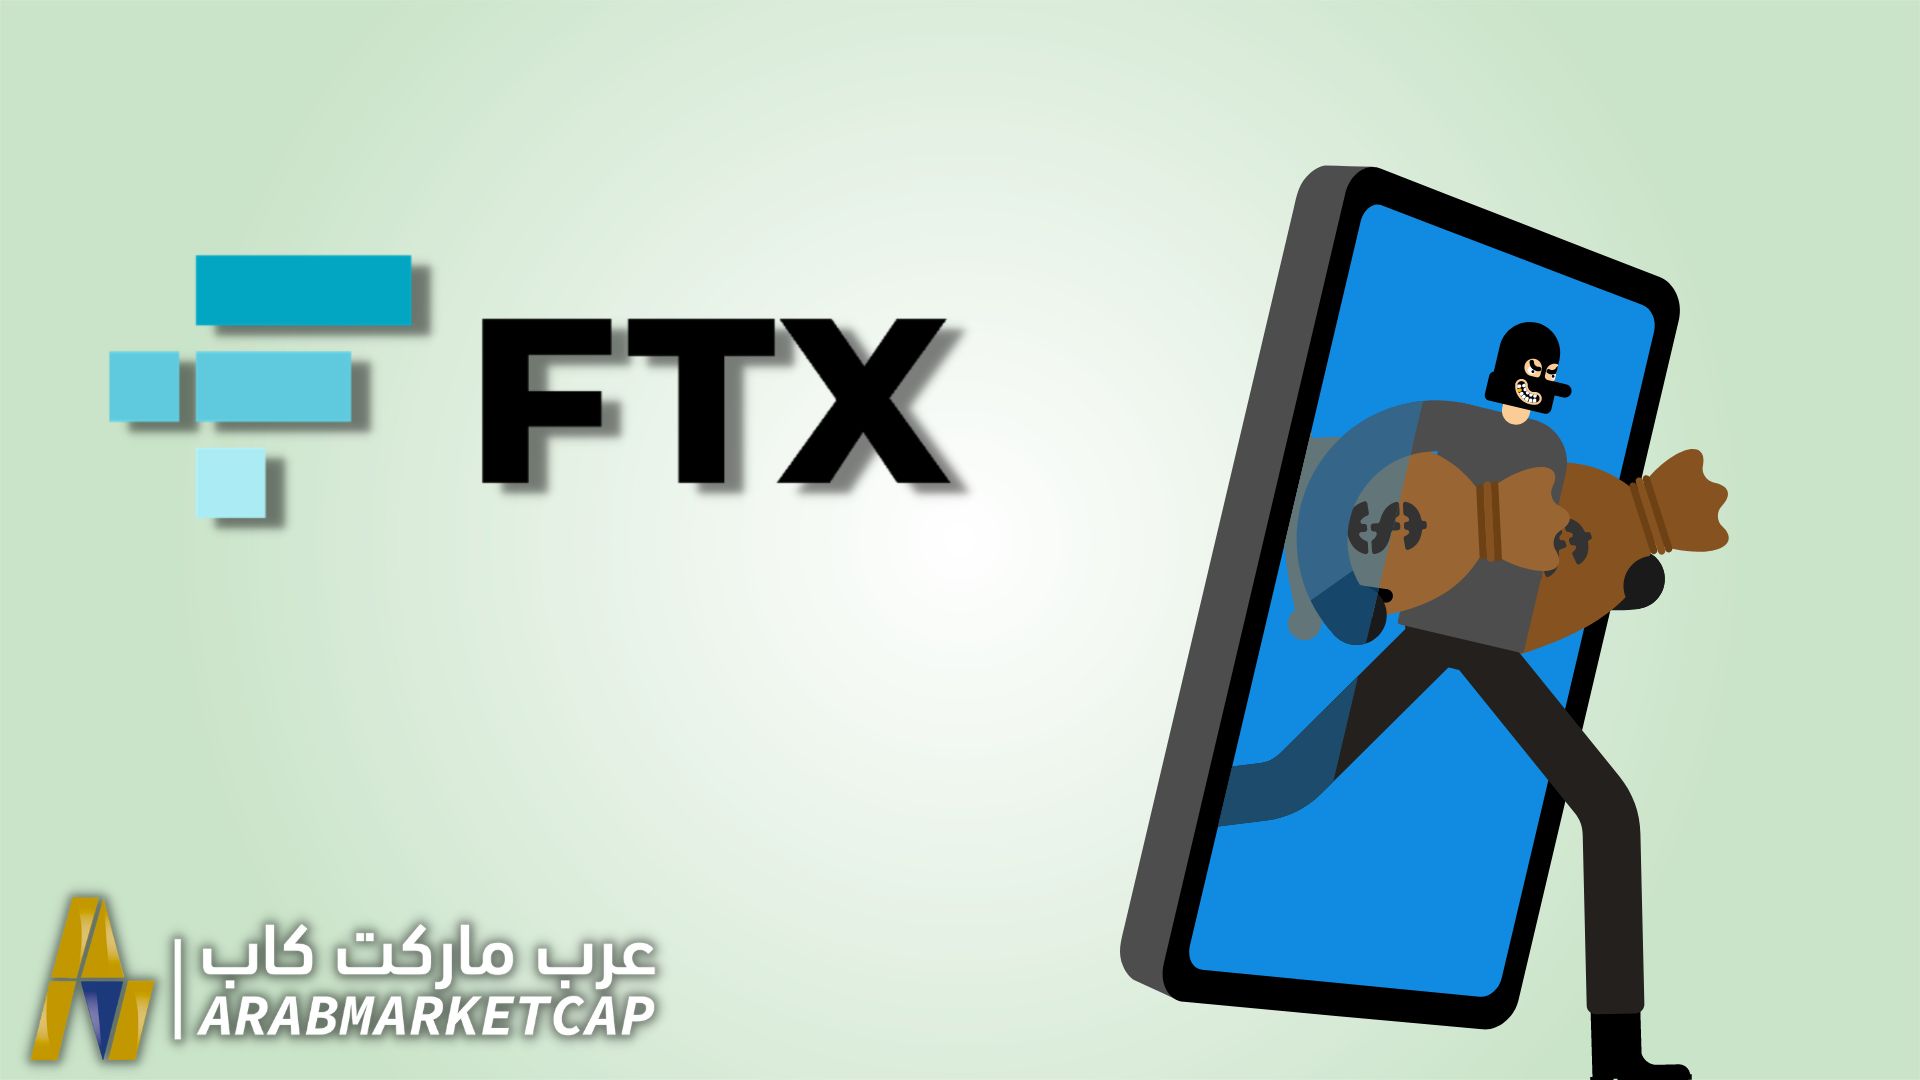 هل ستعود أموال مستخدمي FTX؟ أم أنها اختفت تمامًا؟